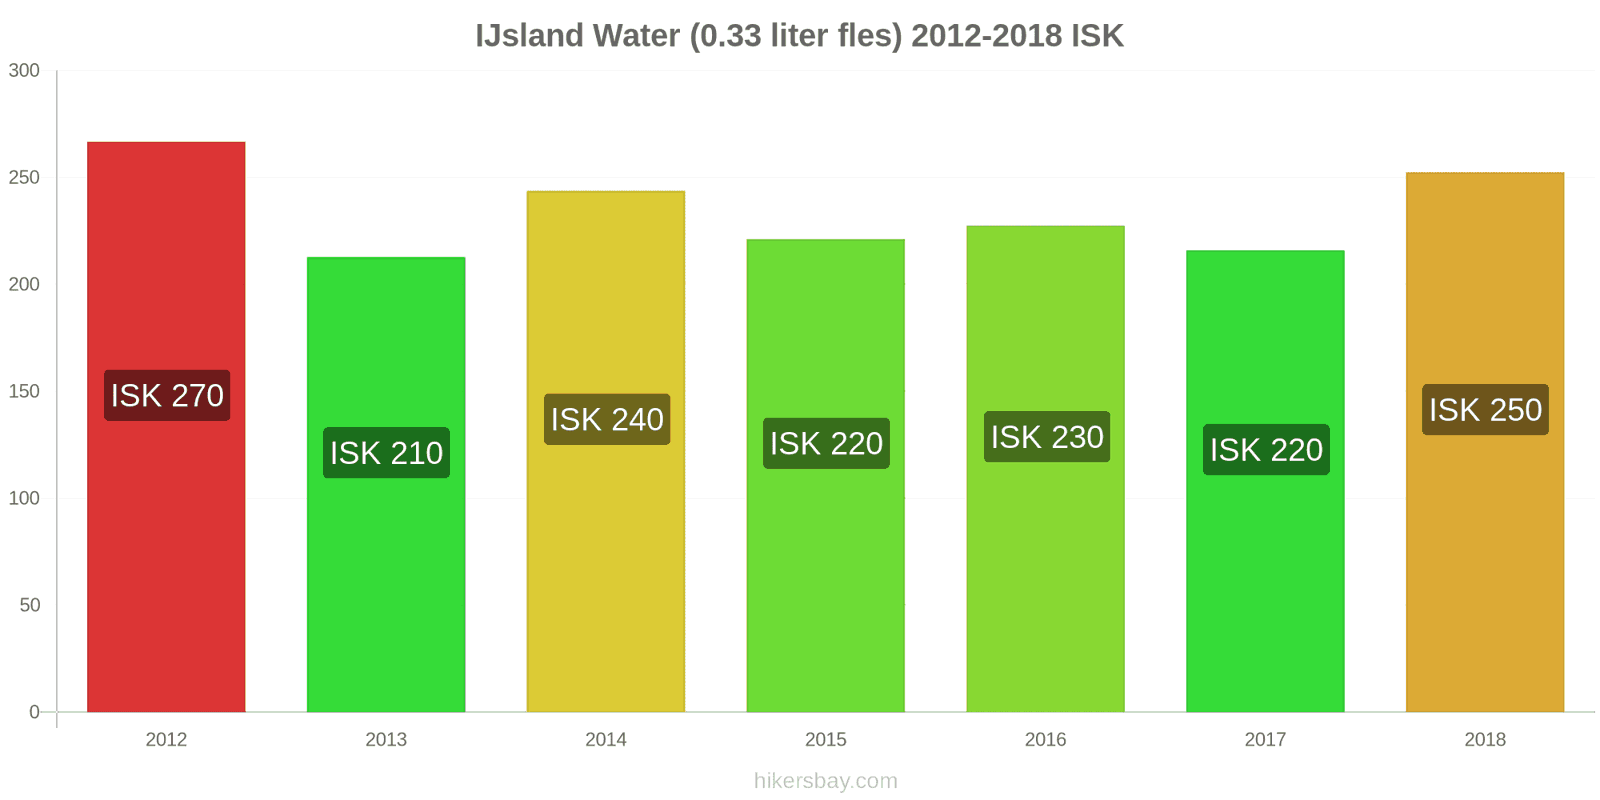 IJsland prijswijzigingen Water (0.33 liter fles) hikersbay.com